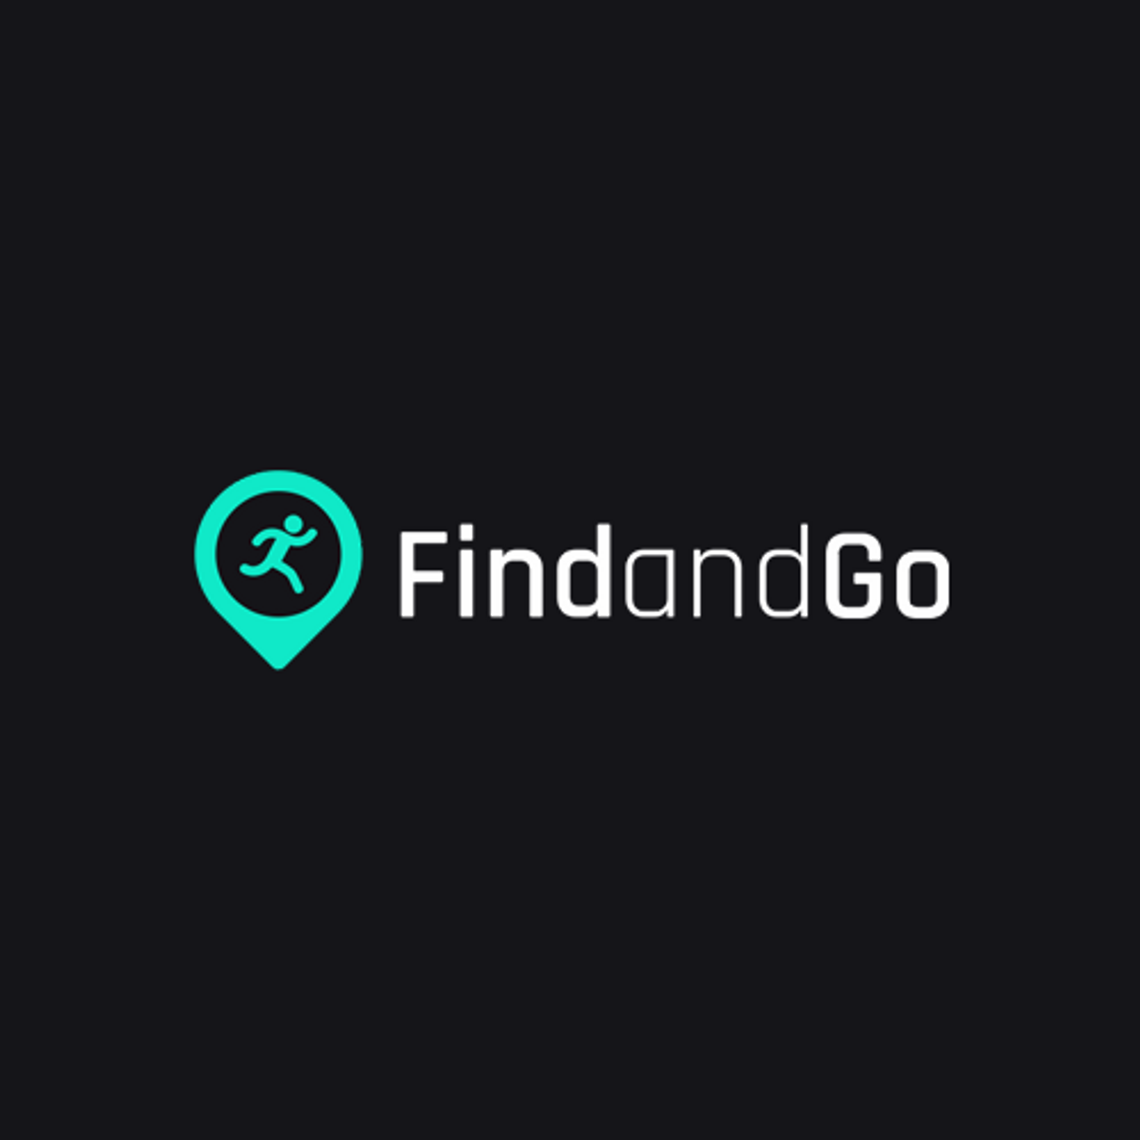 Innowacyjna platforma FindandGo.pl